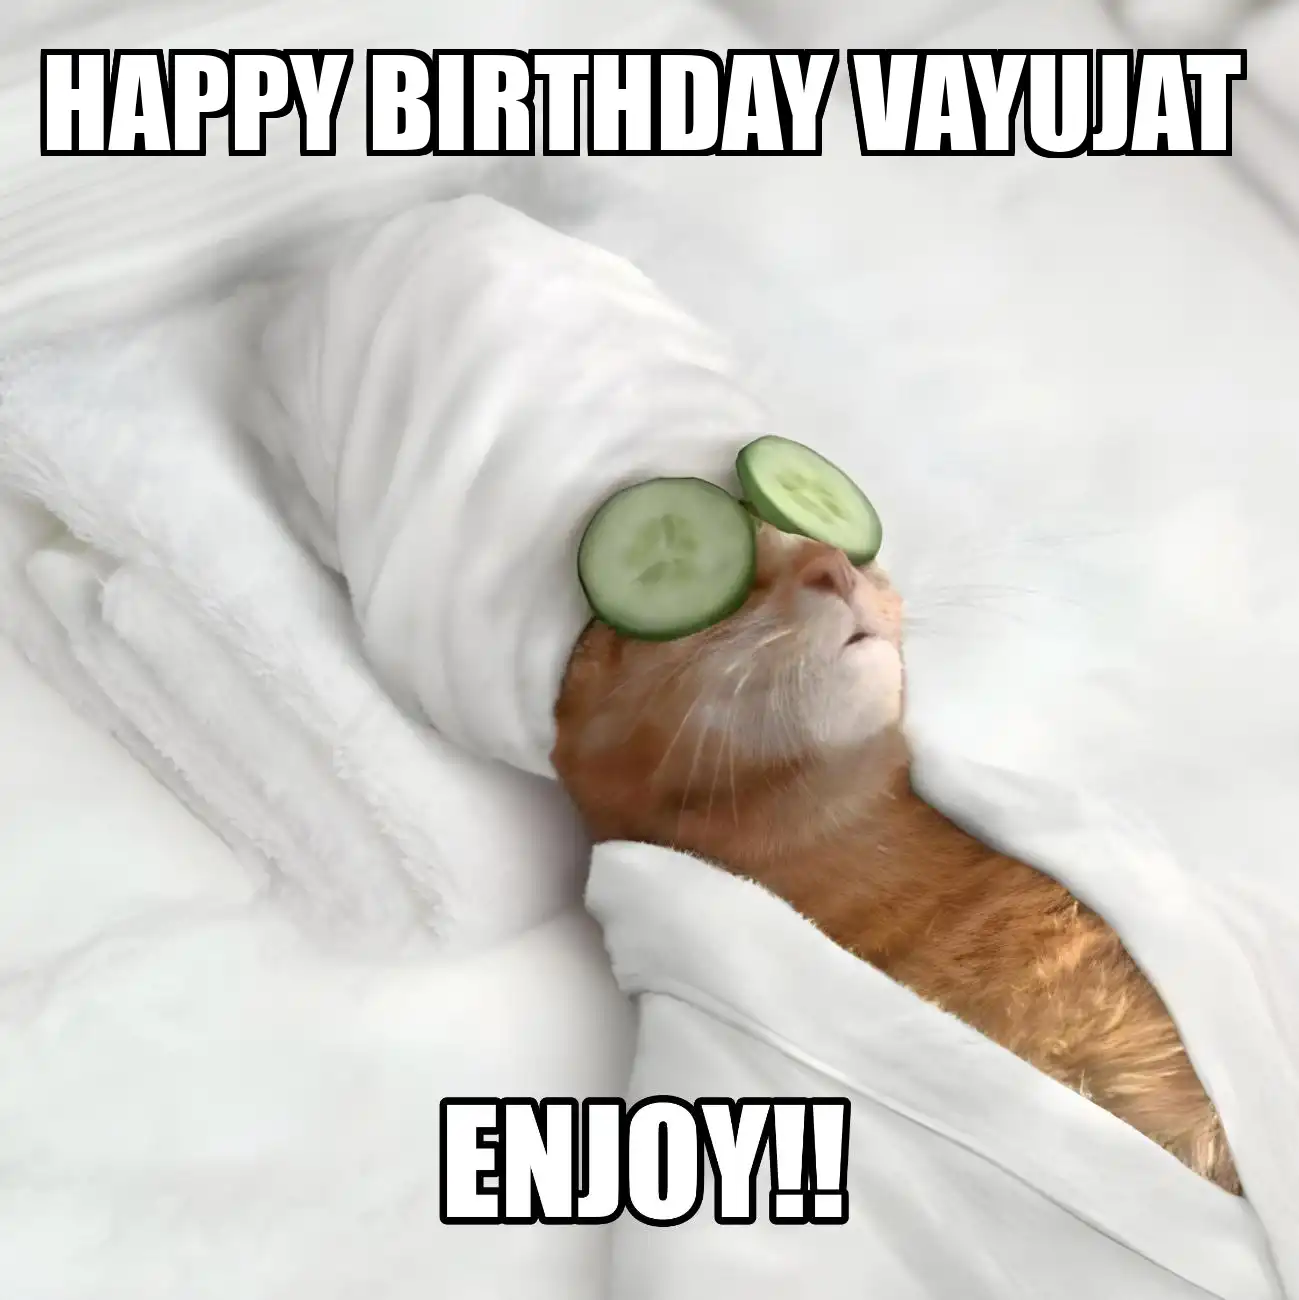 Happy Birthday Vayujat Enjoy Cat Meme